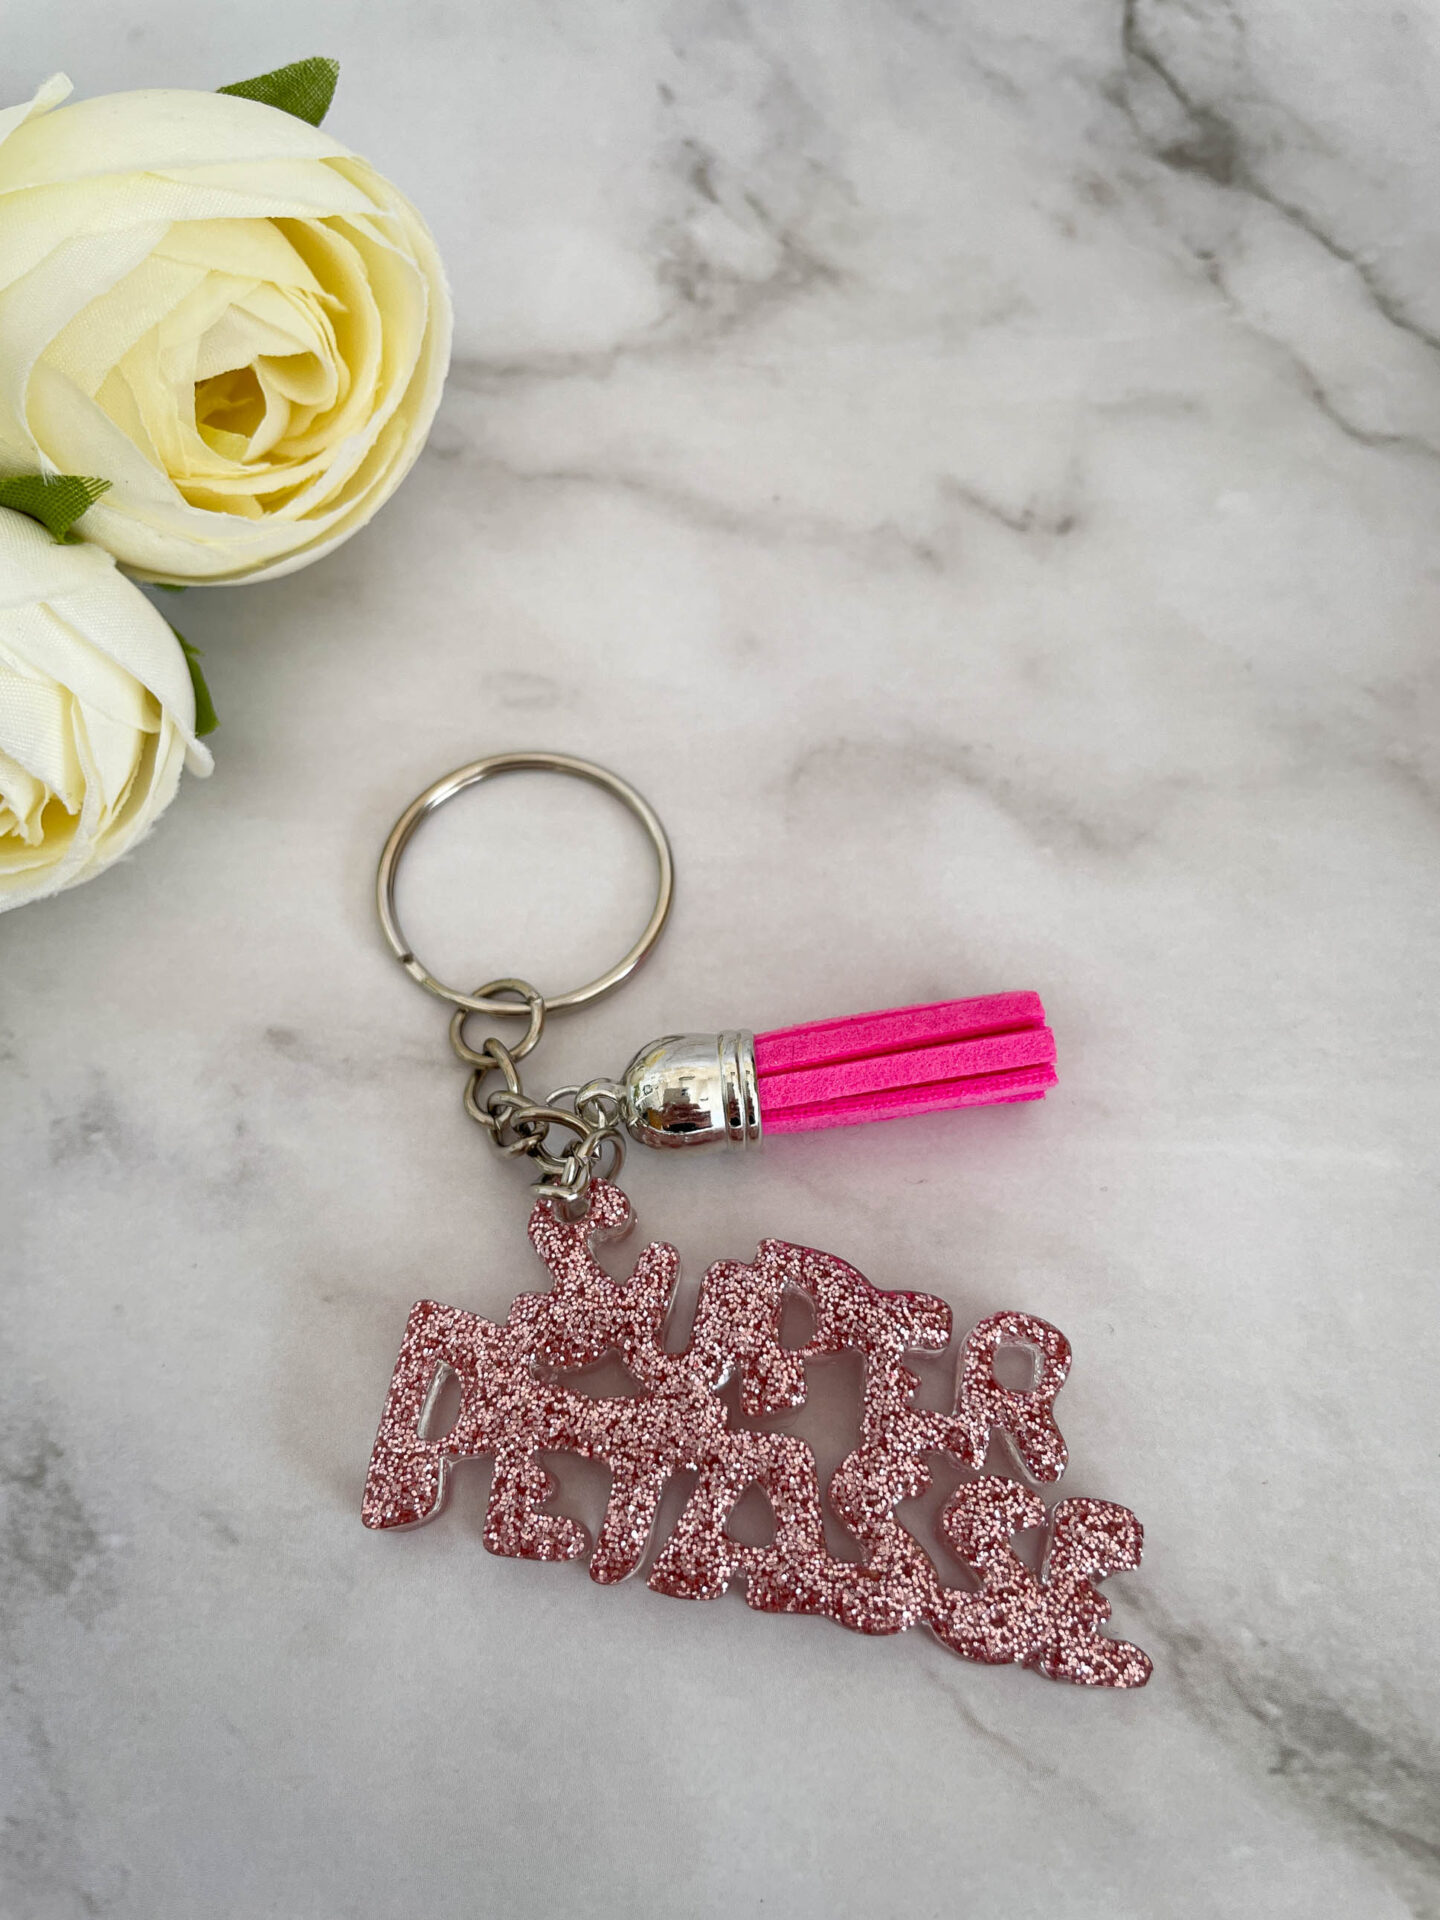 Porte clé mot - Super pétasse rose paillette - Boutique en ligne d'idées cadeau et de décoration